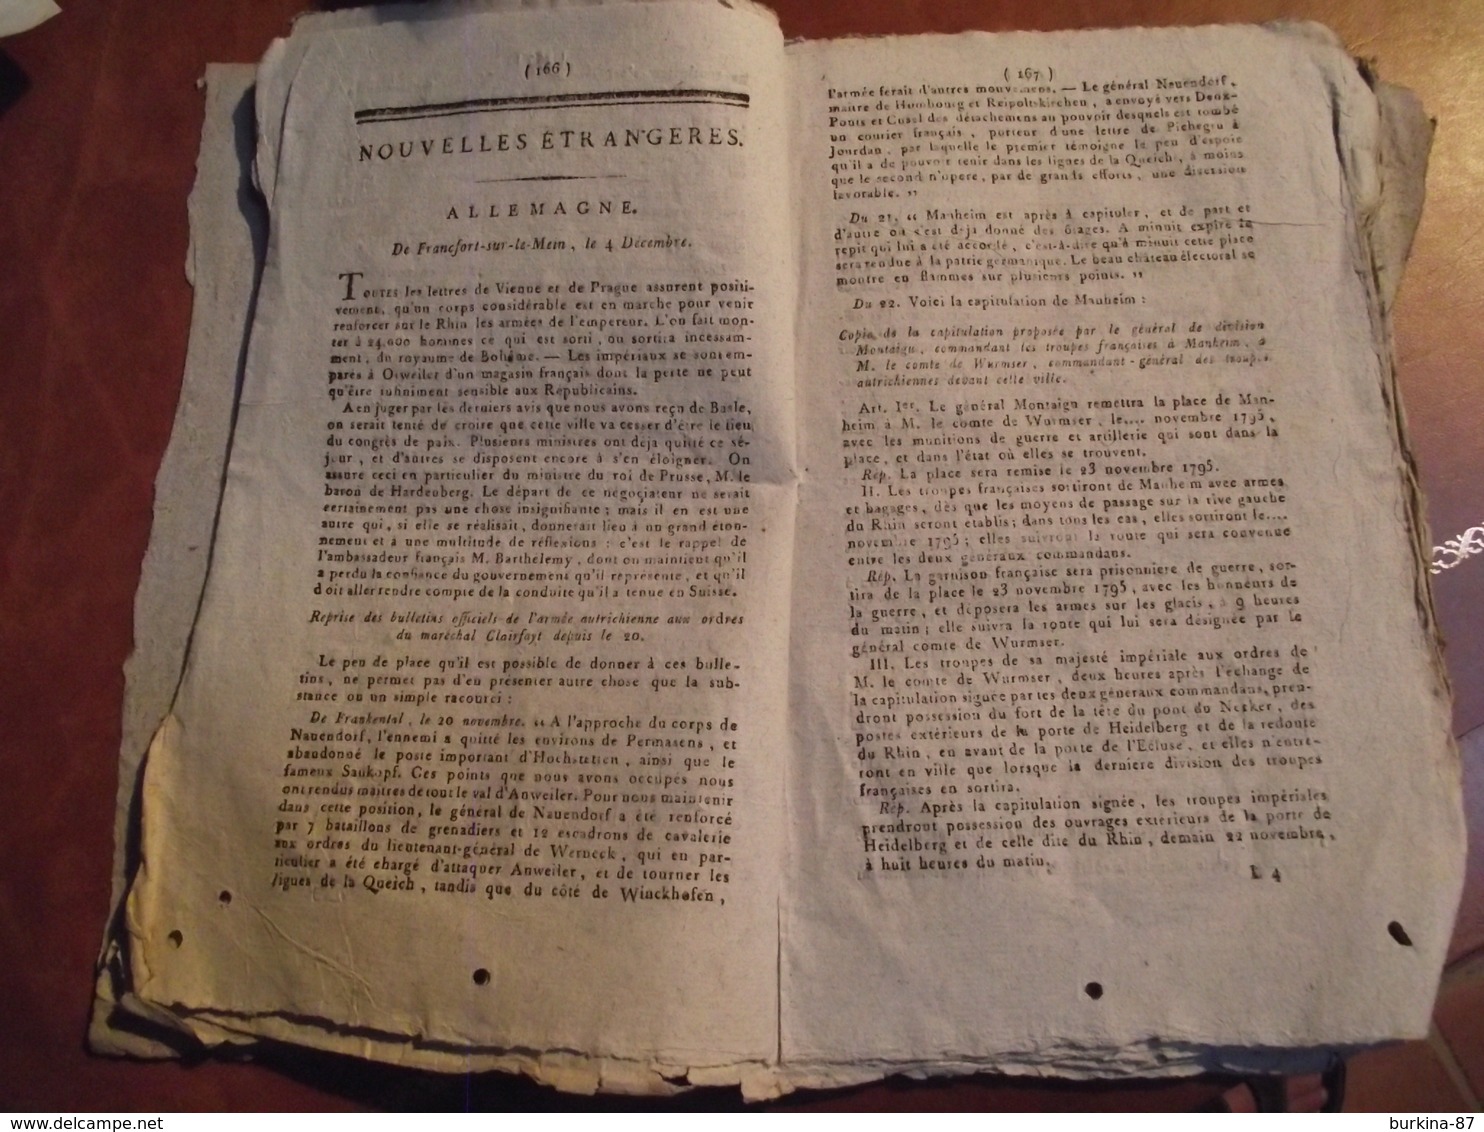 MERCURE FRANCAIS, An 4, N° 18, Journal Historique Politique Et Littéraire - Newspapers - Before 1800